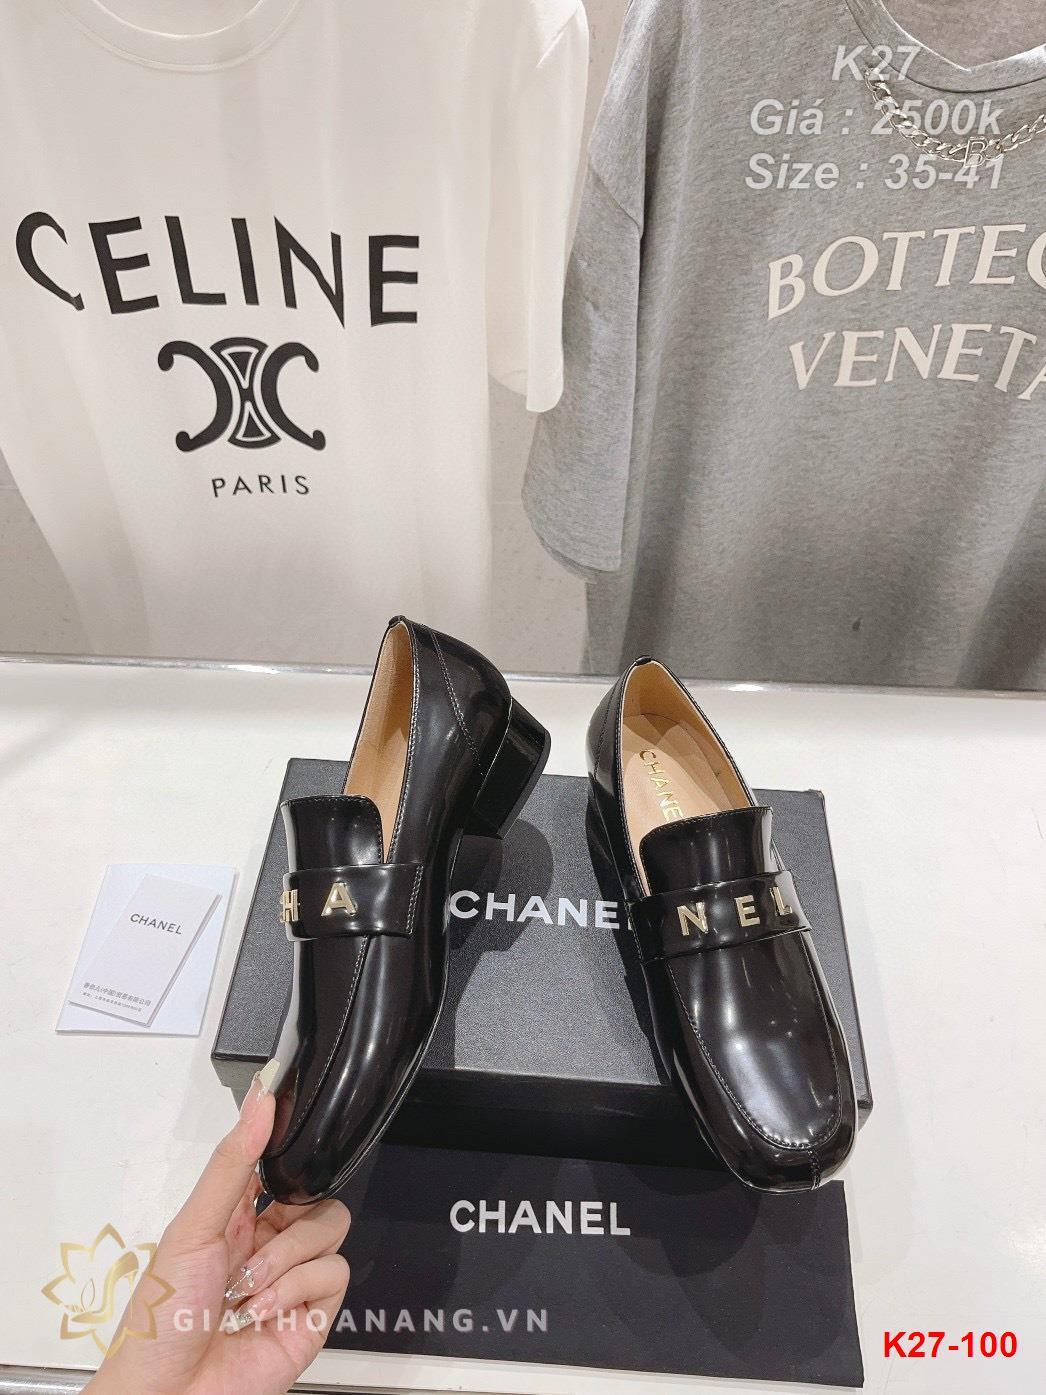 K27-100 Chanel giày lười siêu cấp